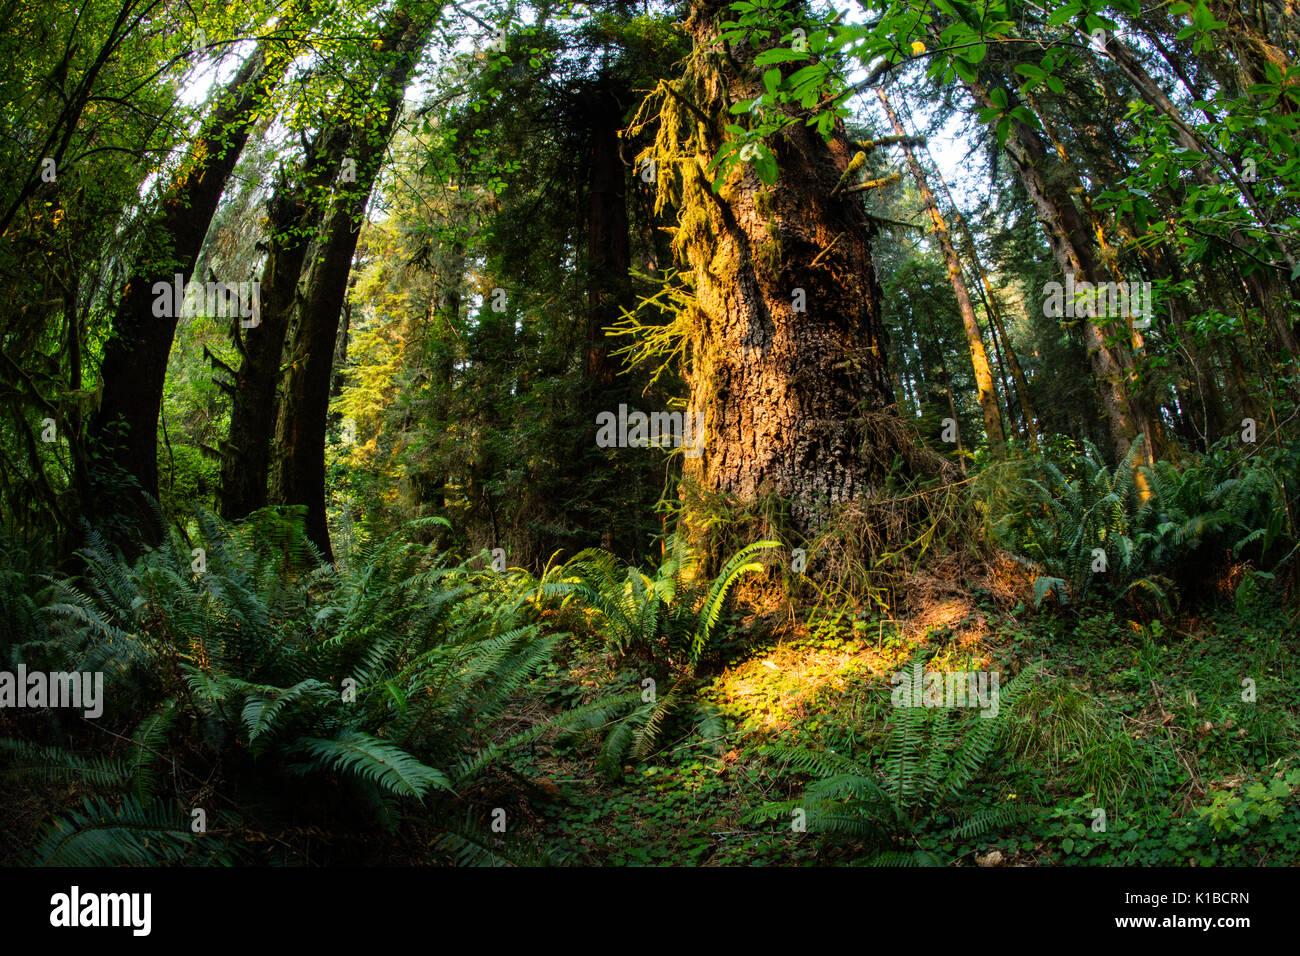 Una bella foresta di alberi di sequoia cresce nel Parco Nazionale di Redwood in California. Questo scenic area è la patria di alcuni dei più alti alberi sulla terra. Foto Stock